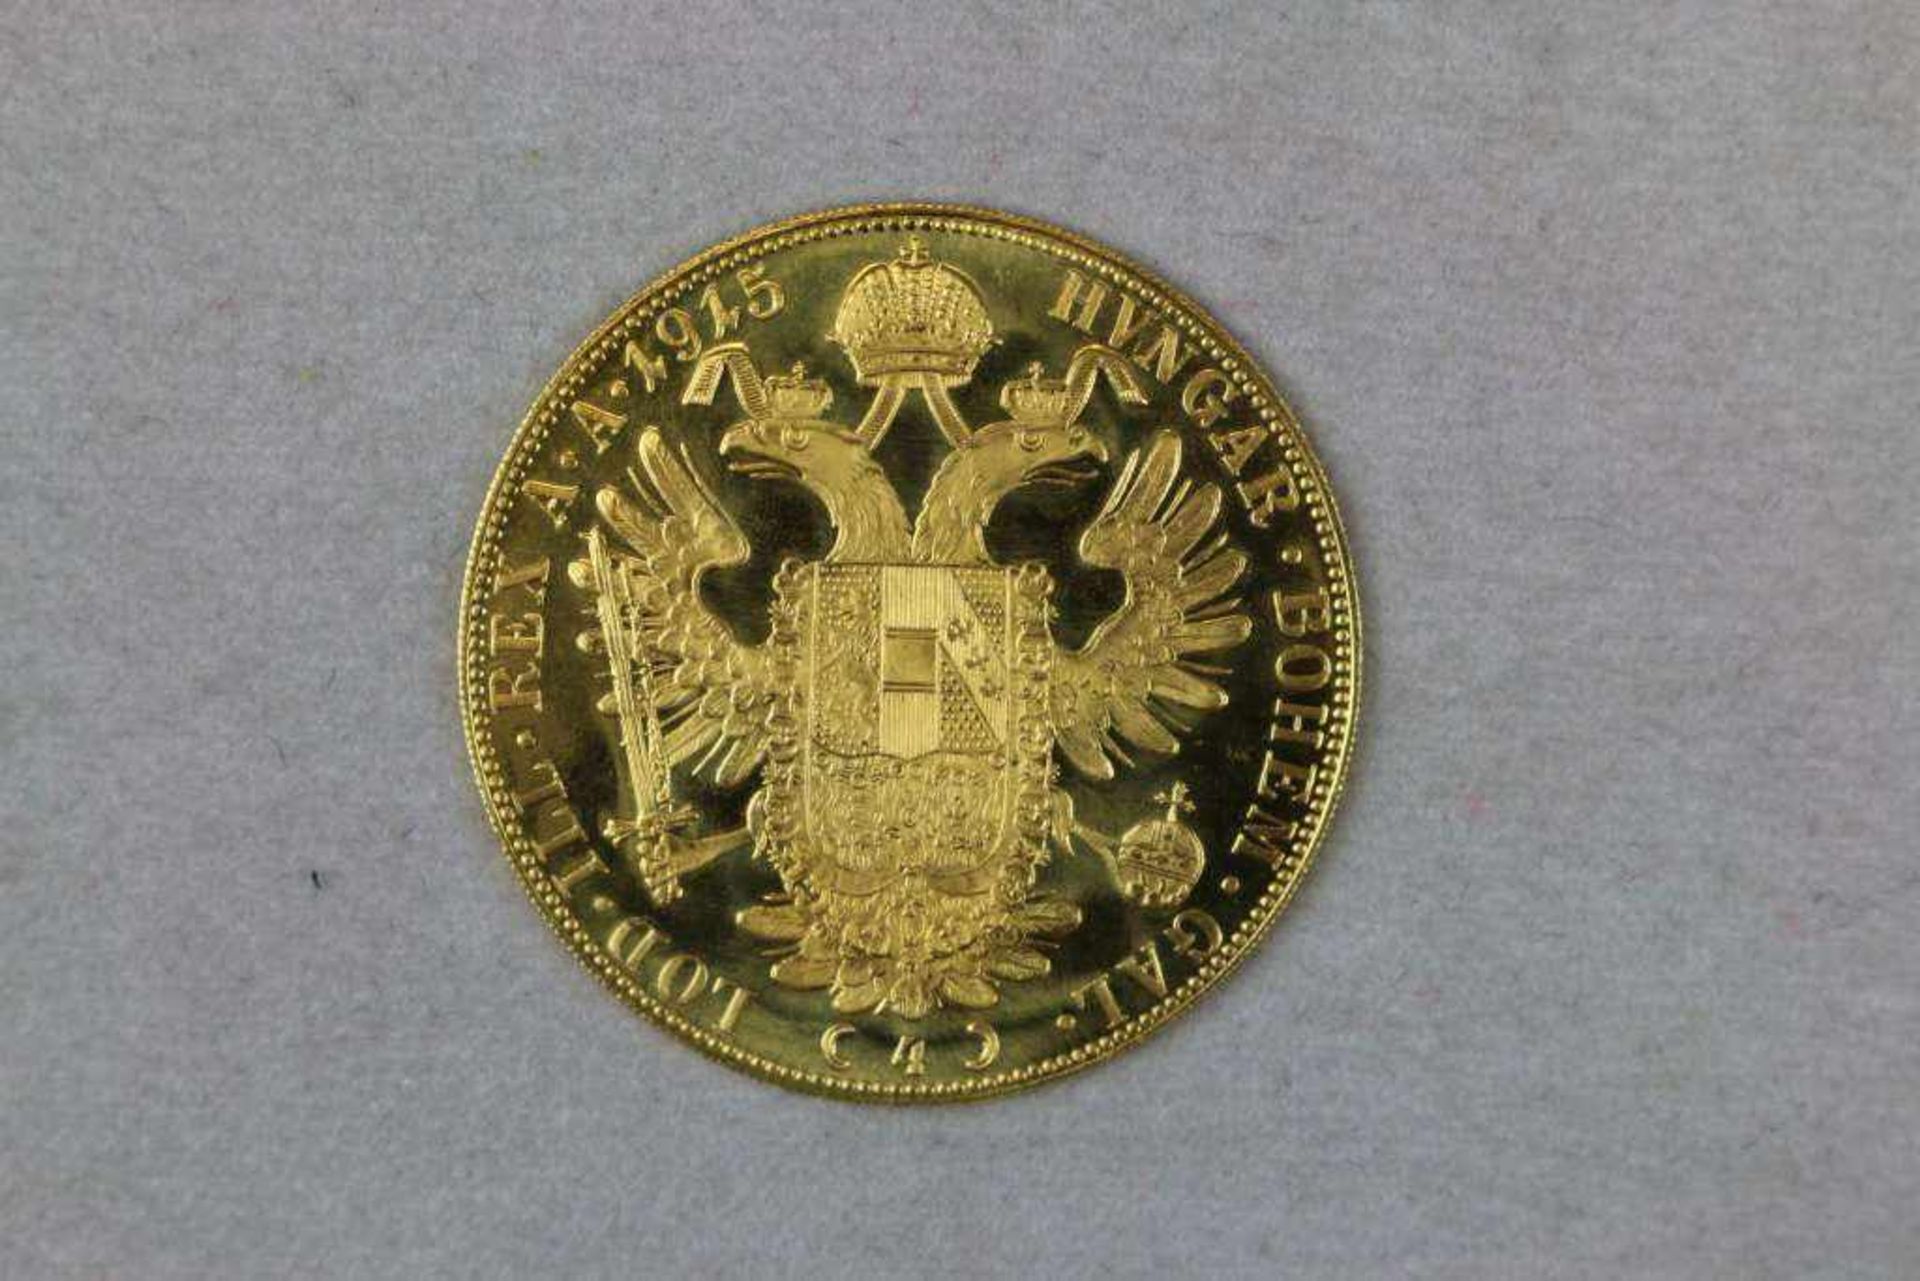 Goldmünze 4 Dukaten Österreich Kaiser Franz Joseph Golddukat 1915, Bruttogewicht: 13,963 g, - Bild 2 aus 2